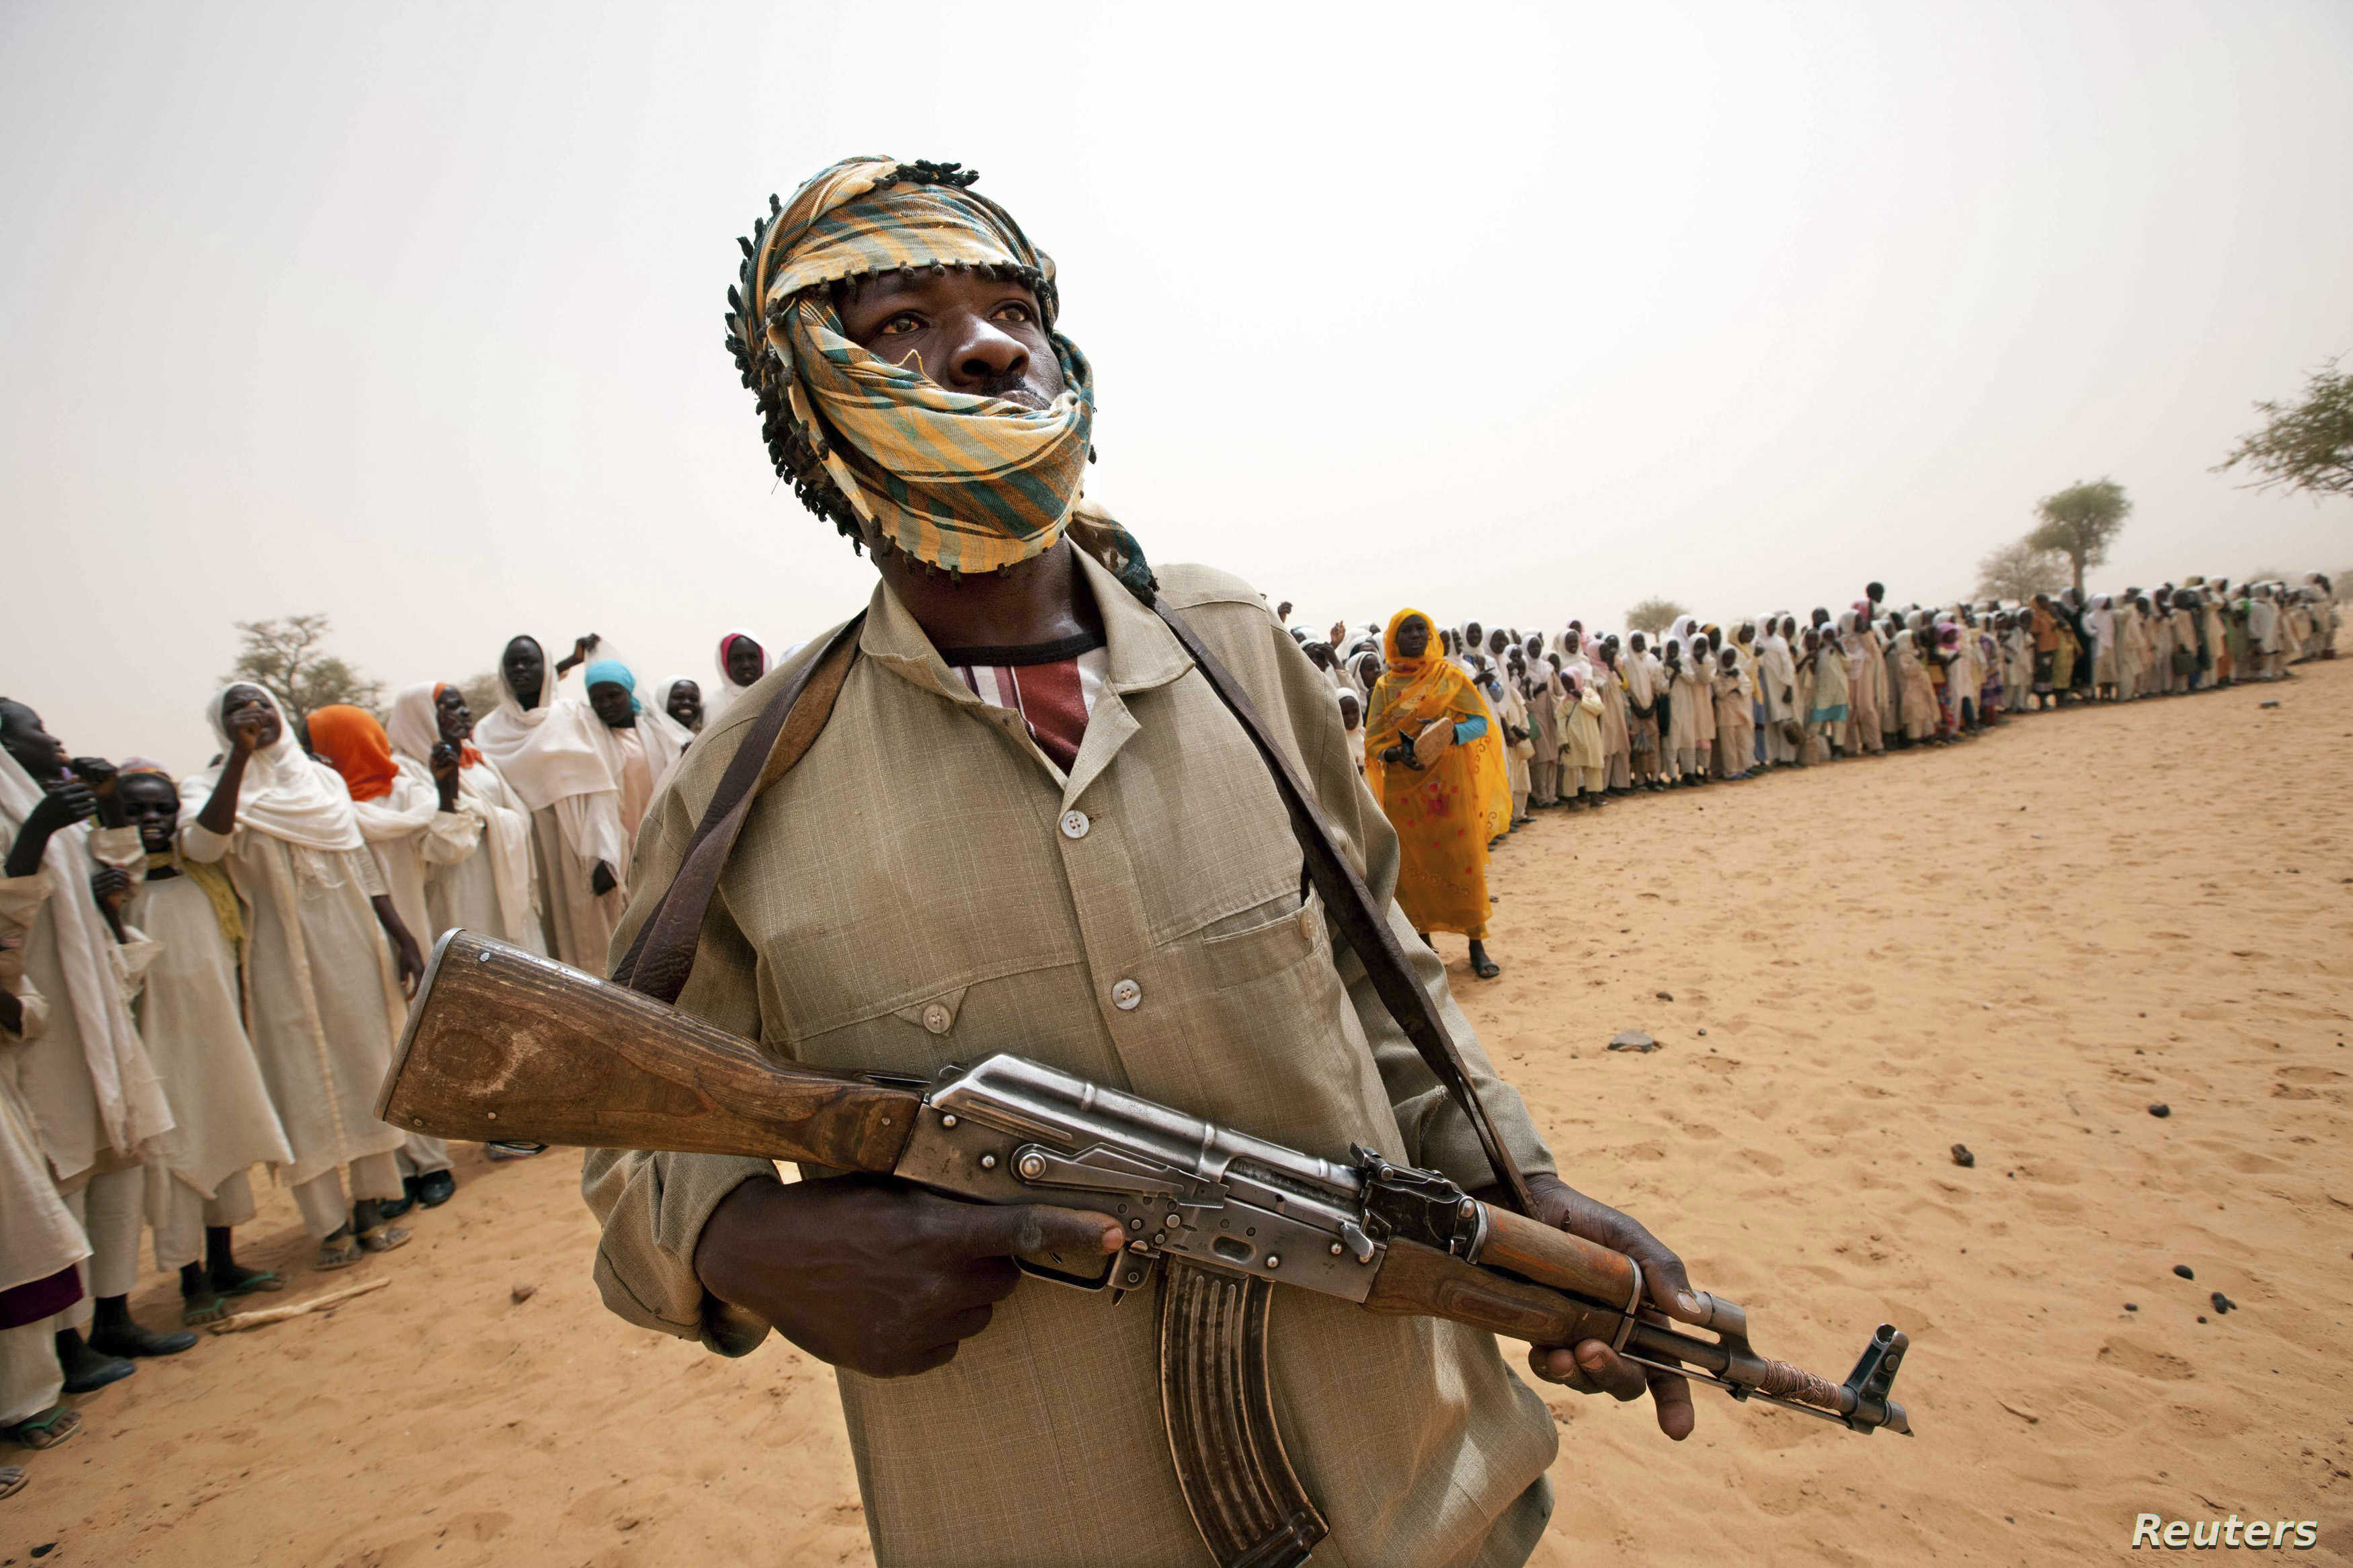 السلطات السودانية تعلن حالة الطوارئ جنوب دارفور بعد هجمات دموية